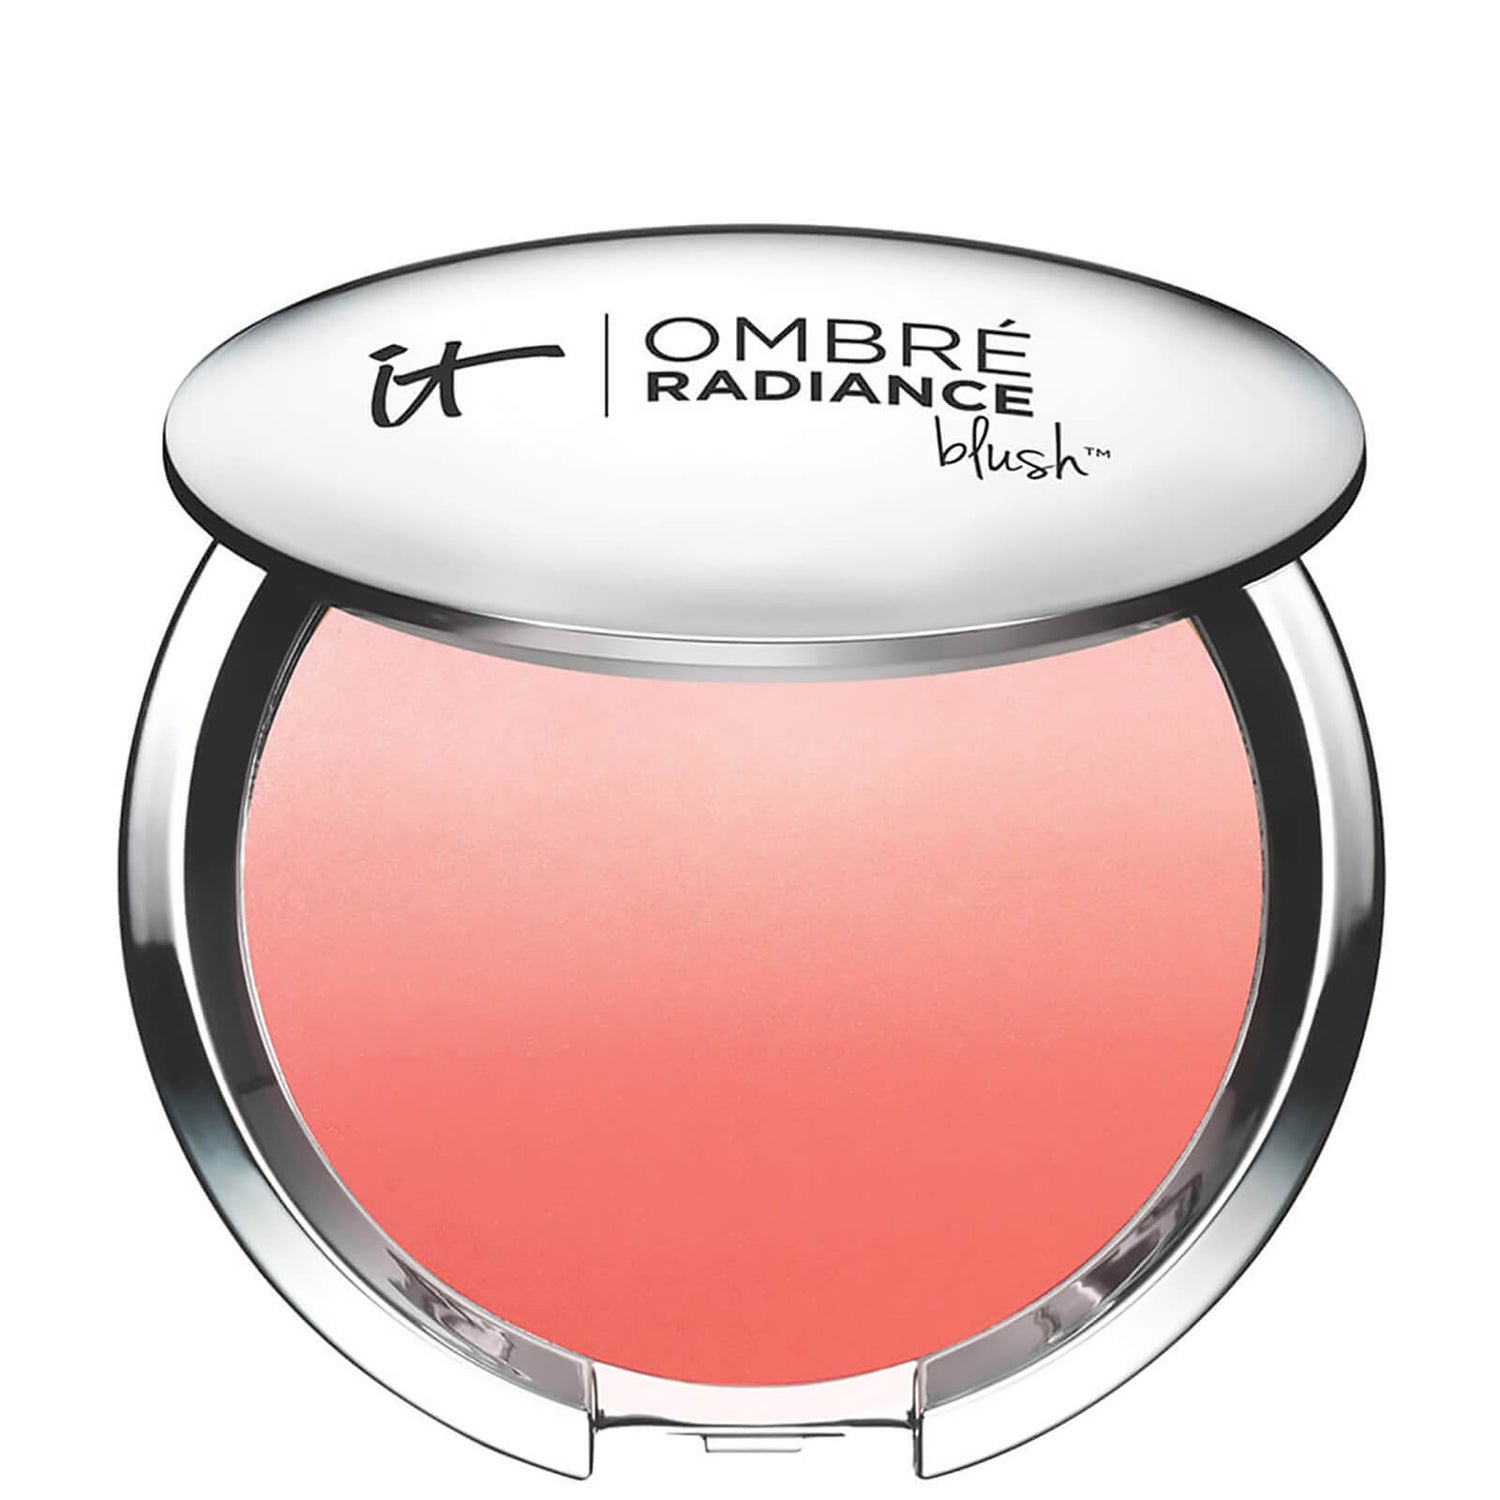 Румяна IT Cosmetics Ombré Radiance Blush, 10,8 г (разные оттенки) .